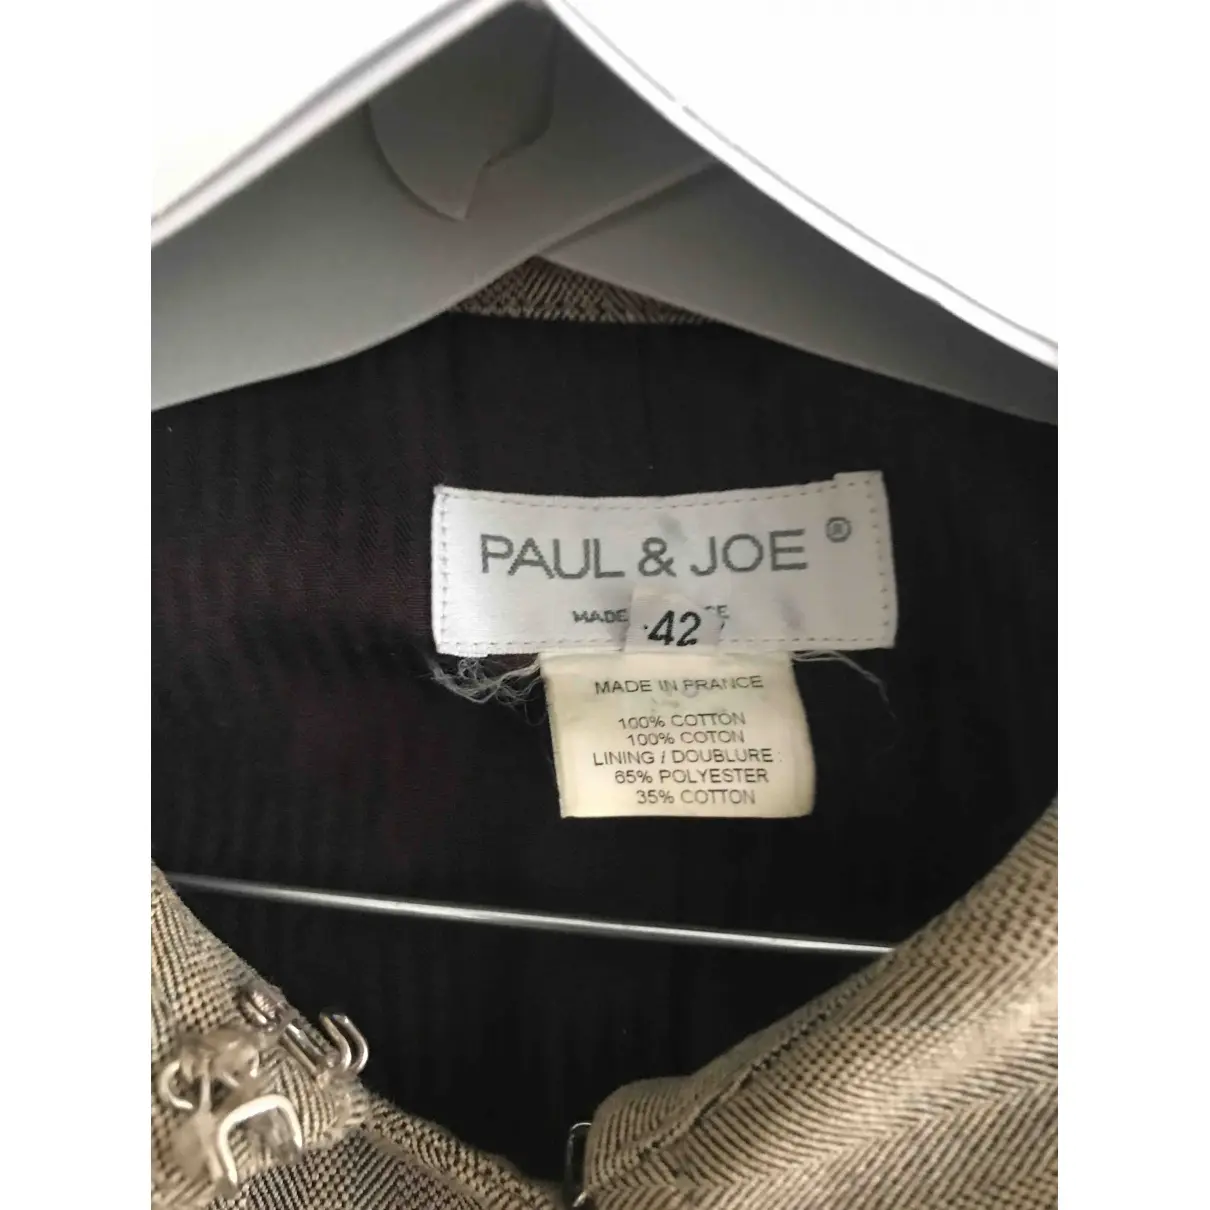 Buy Paul & Joe Trench coat online